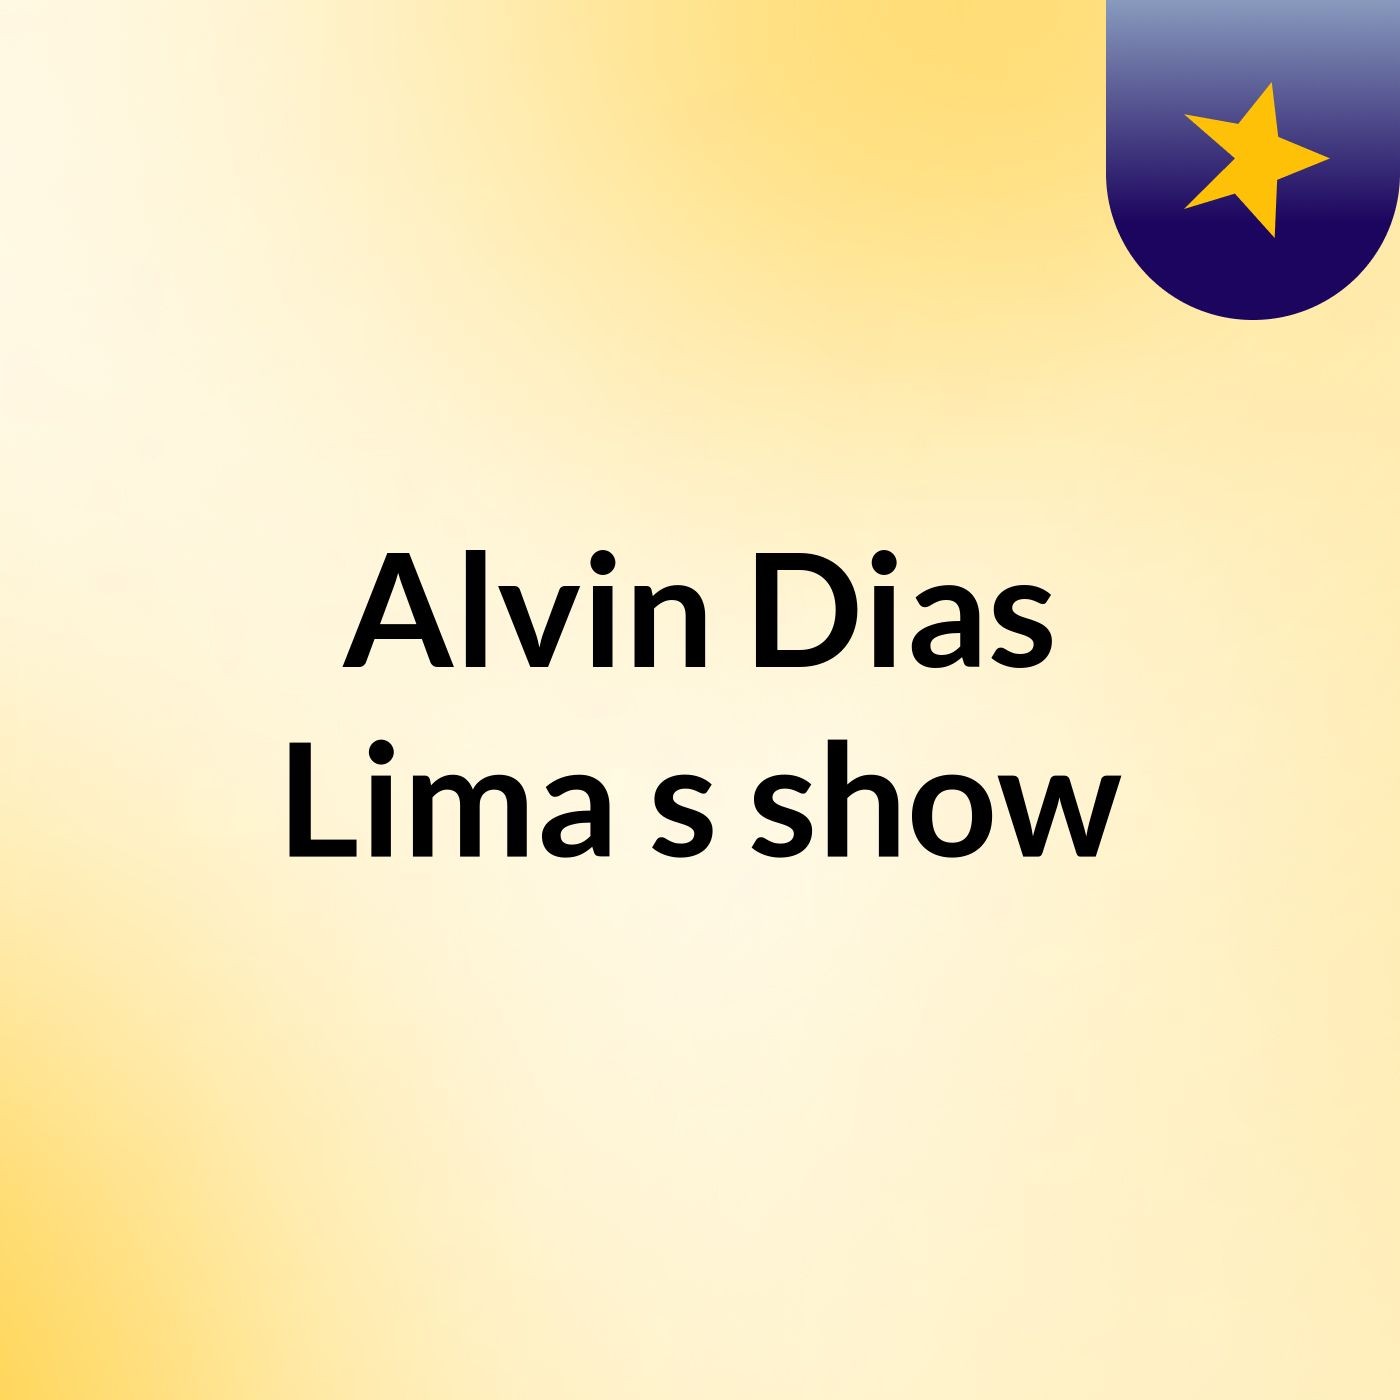 Alvin Dias Lima's show